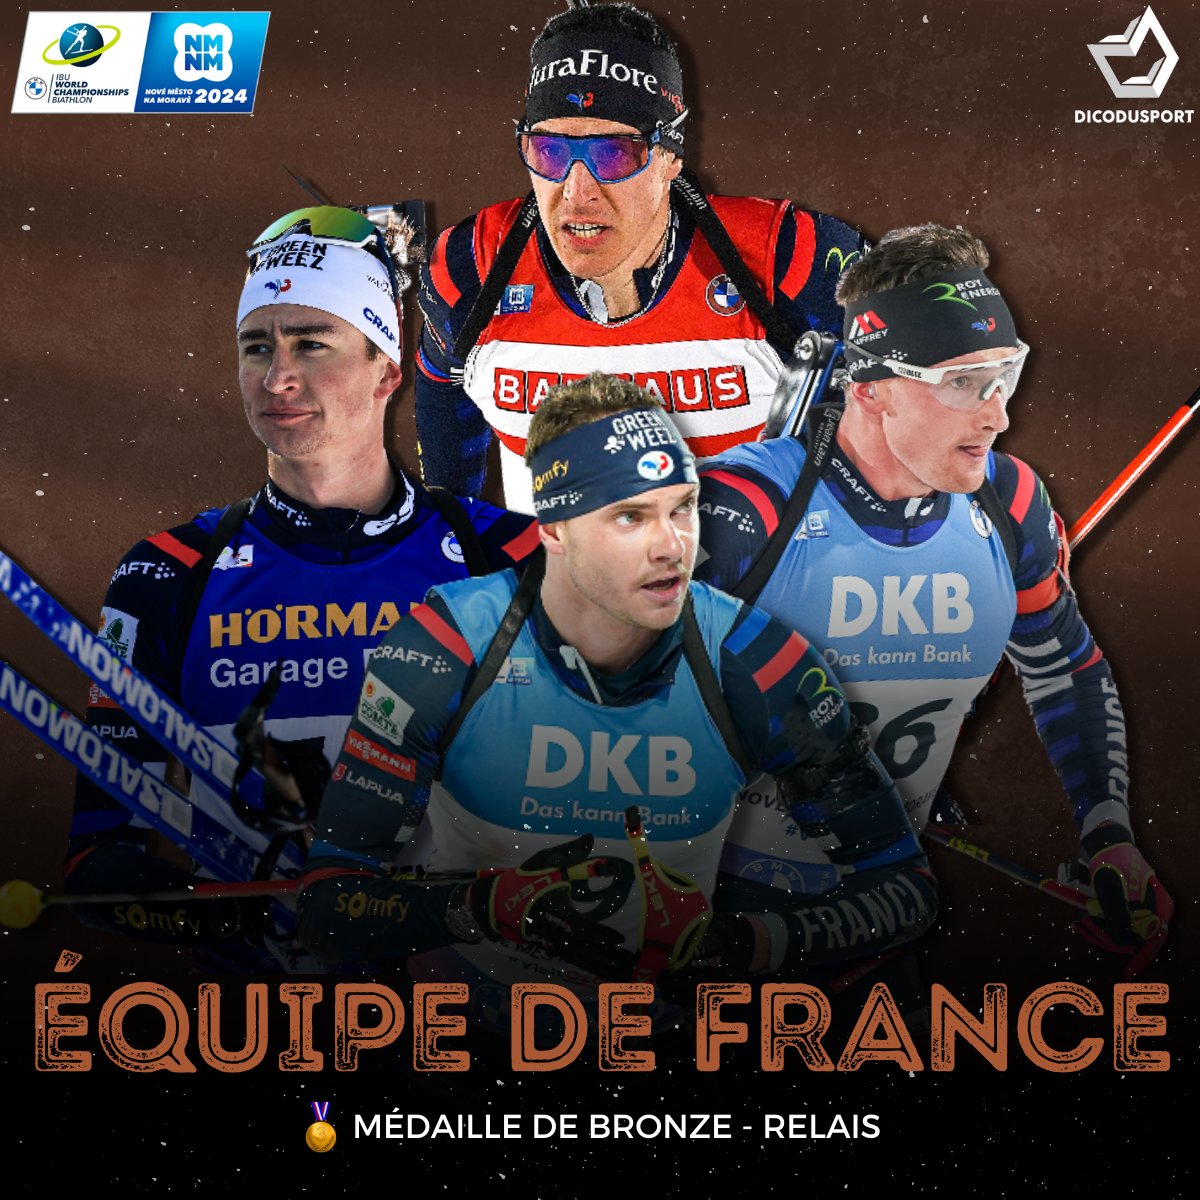 🇫🇷🥉 𝐃𝐔 𝐁𝐑𝐎𝐍𝐙𝐄 𝐏𝐎𝐔𝐑 𝐋𝐄𝐒 𝐁𝐋𝐄𝐔𝐒 !

Au terme d'une course incroyable, la France prend le bronze sur le relais masculin à Nove Mesto, remporté par la Suède devant une Norvège qui a vu le titre s'envoler sur le dernier tir ! 🤯 #NMNM24 #Biathlon